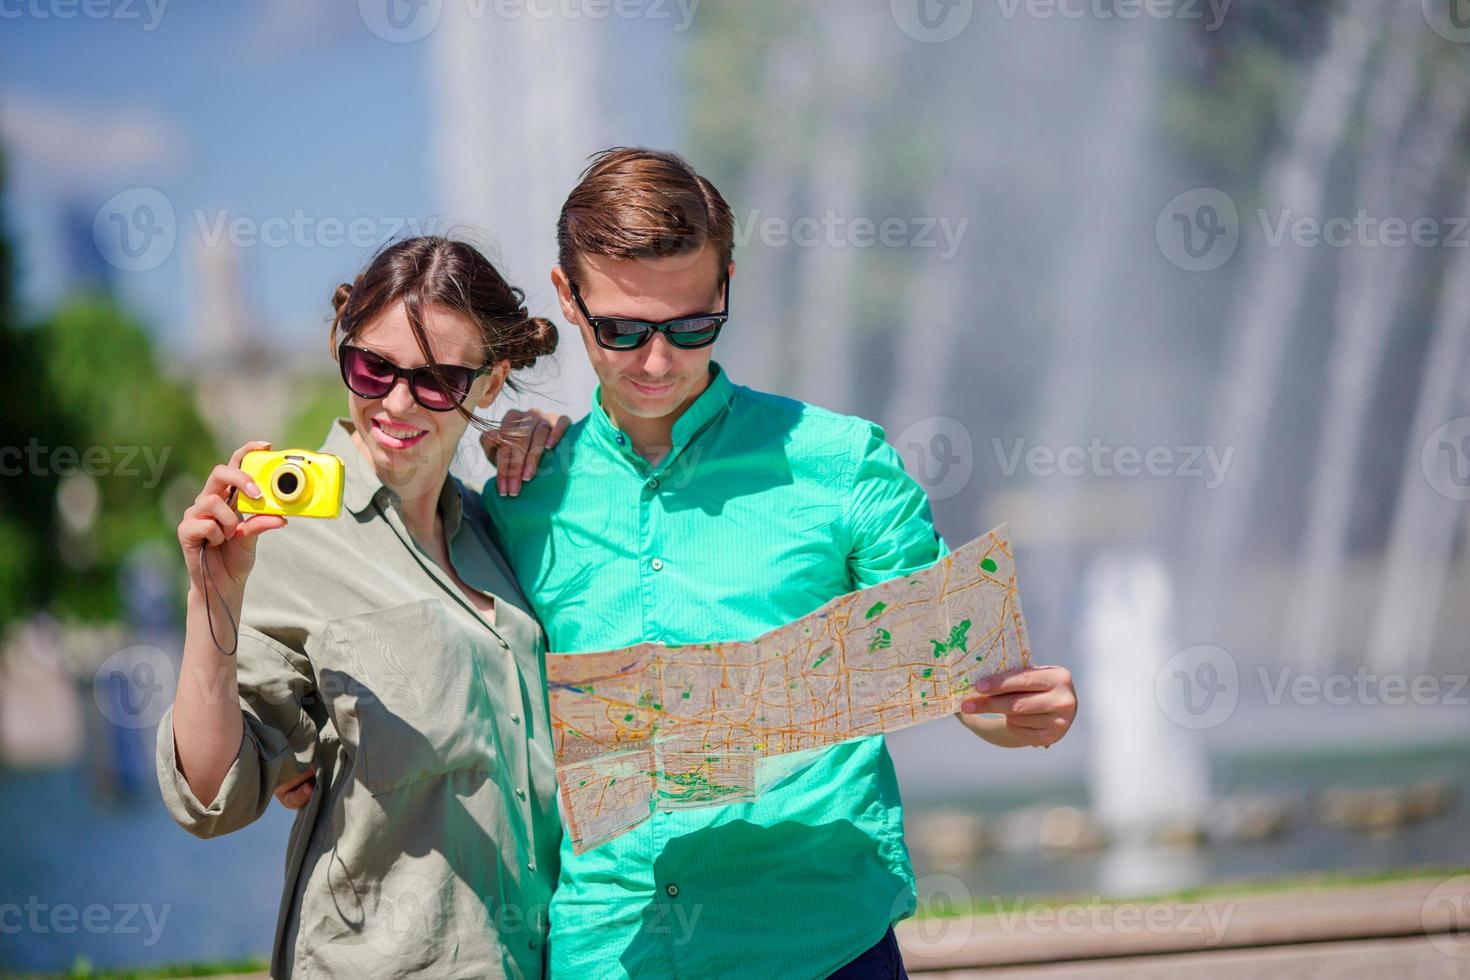 jóvenes amigos turistas que viajan de vacaciones en europa sonriendo felices. chica tomando fotos en el parque y hombre con mapa de la ciudad en busca de atracciones